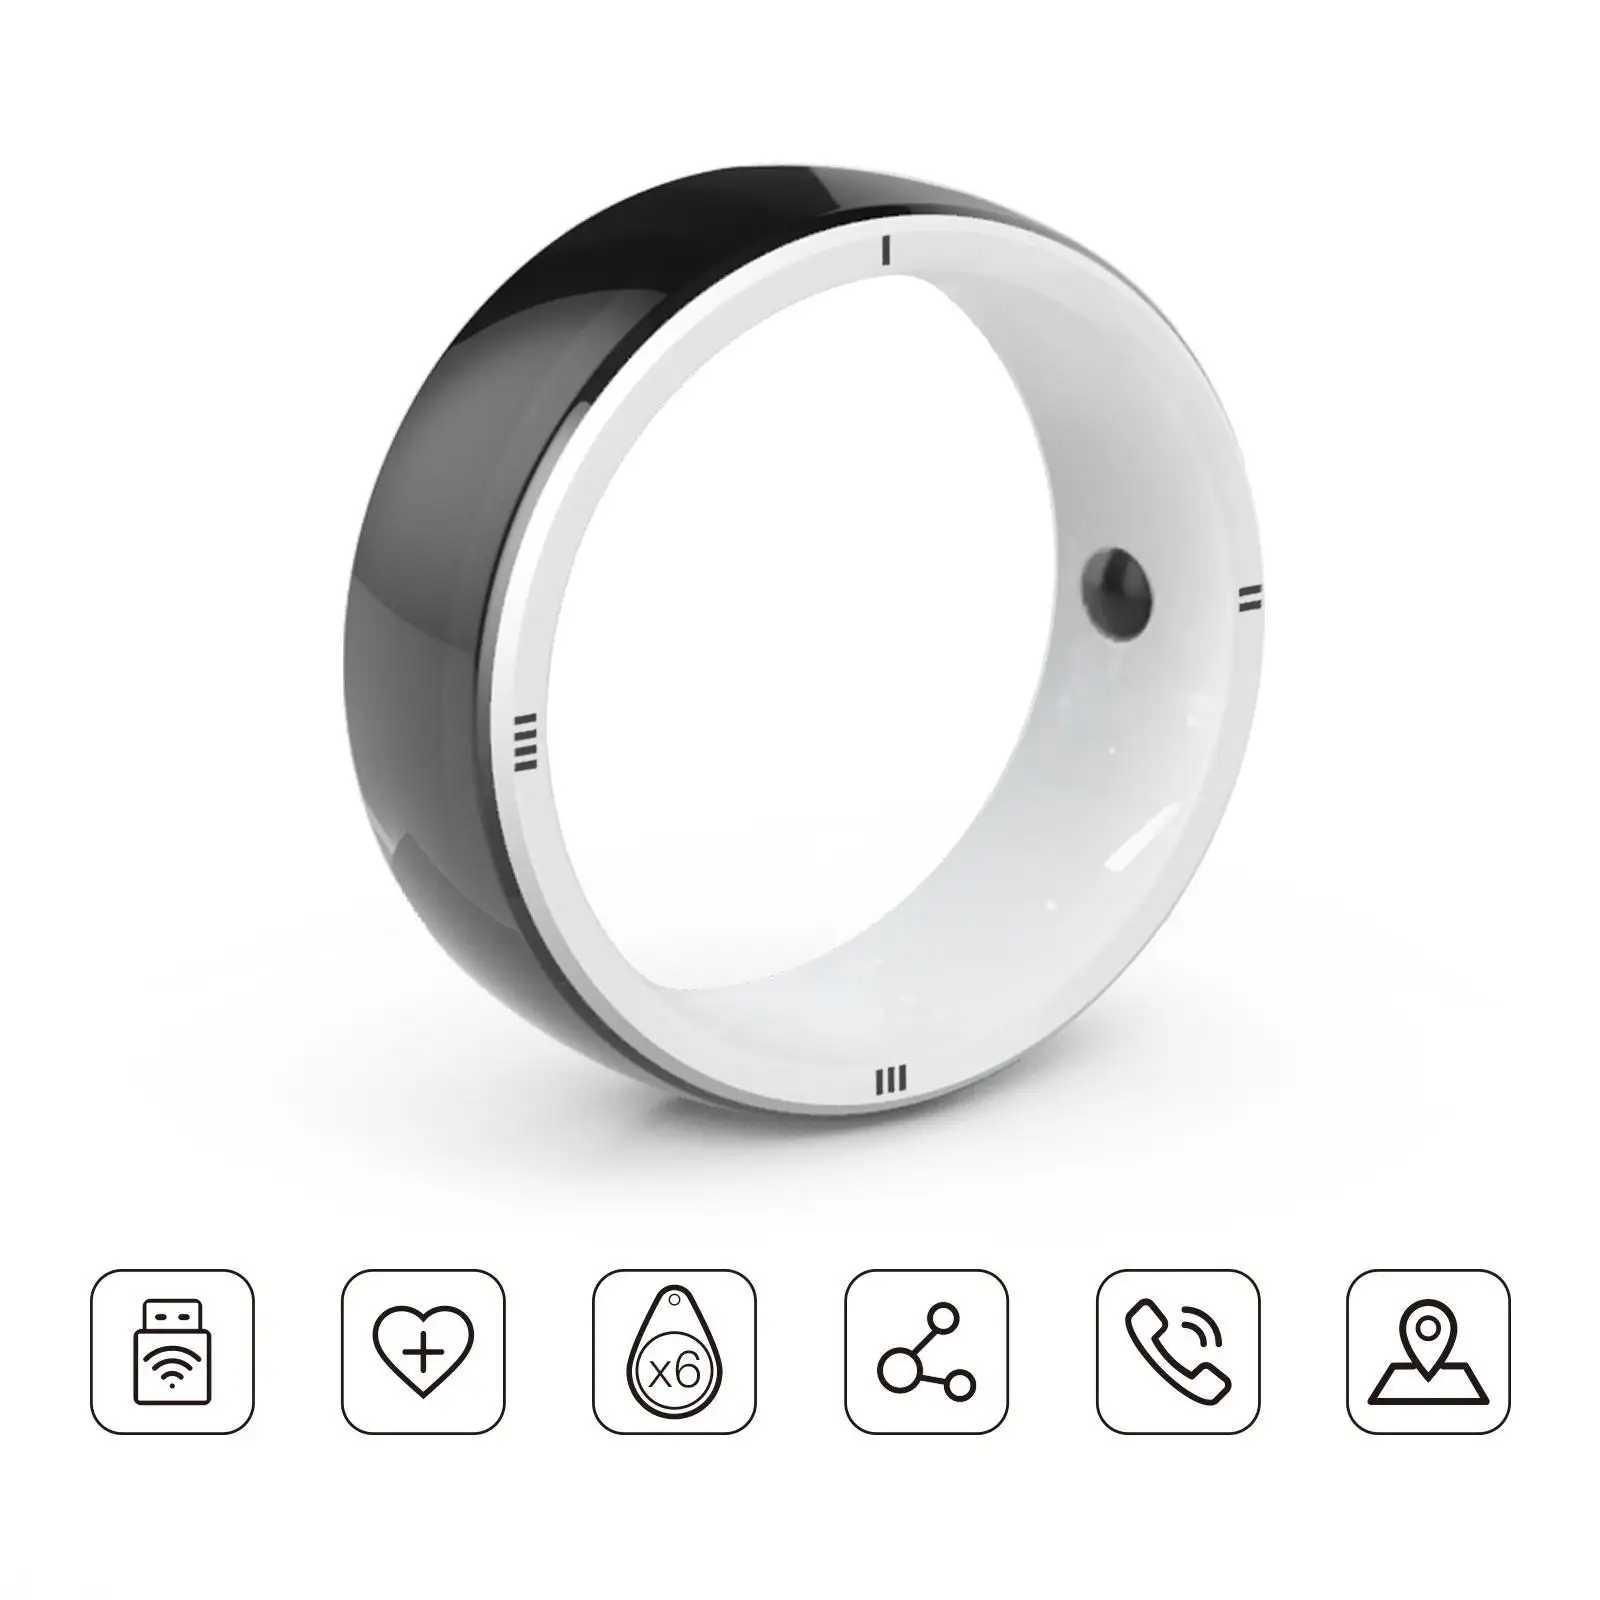 Anello intelligente JAKCOM R5 nuovo anello intelligente migliore di miglior lettore per pdf accessori allenamento palestra lebon auricolari prezzo touch screen